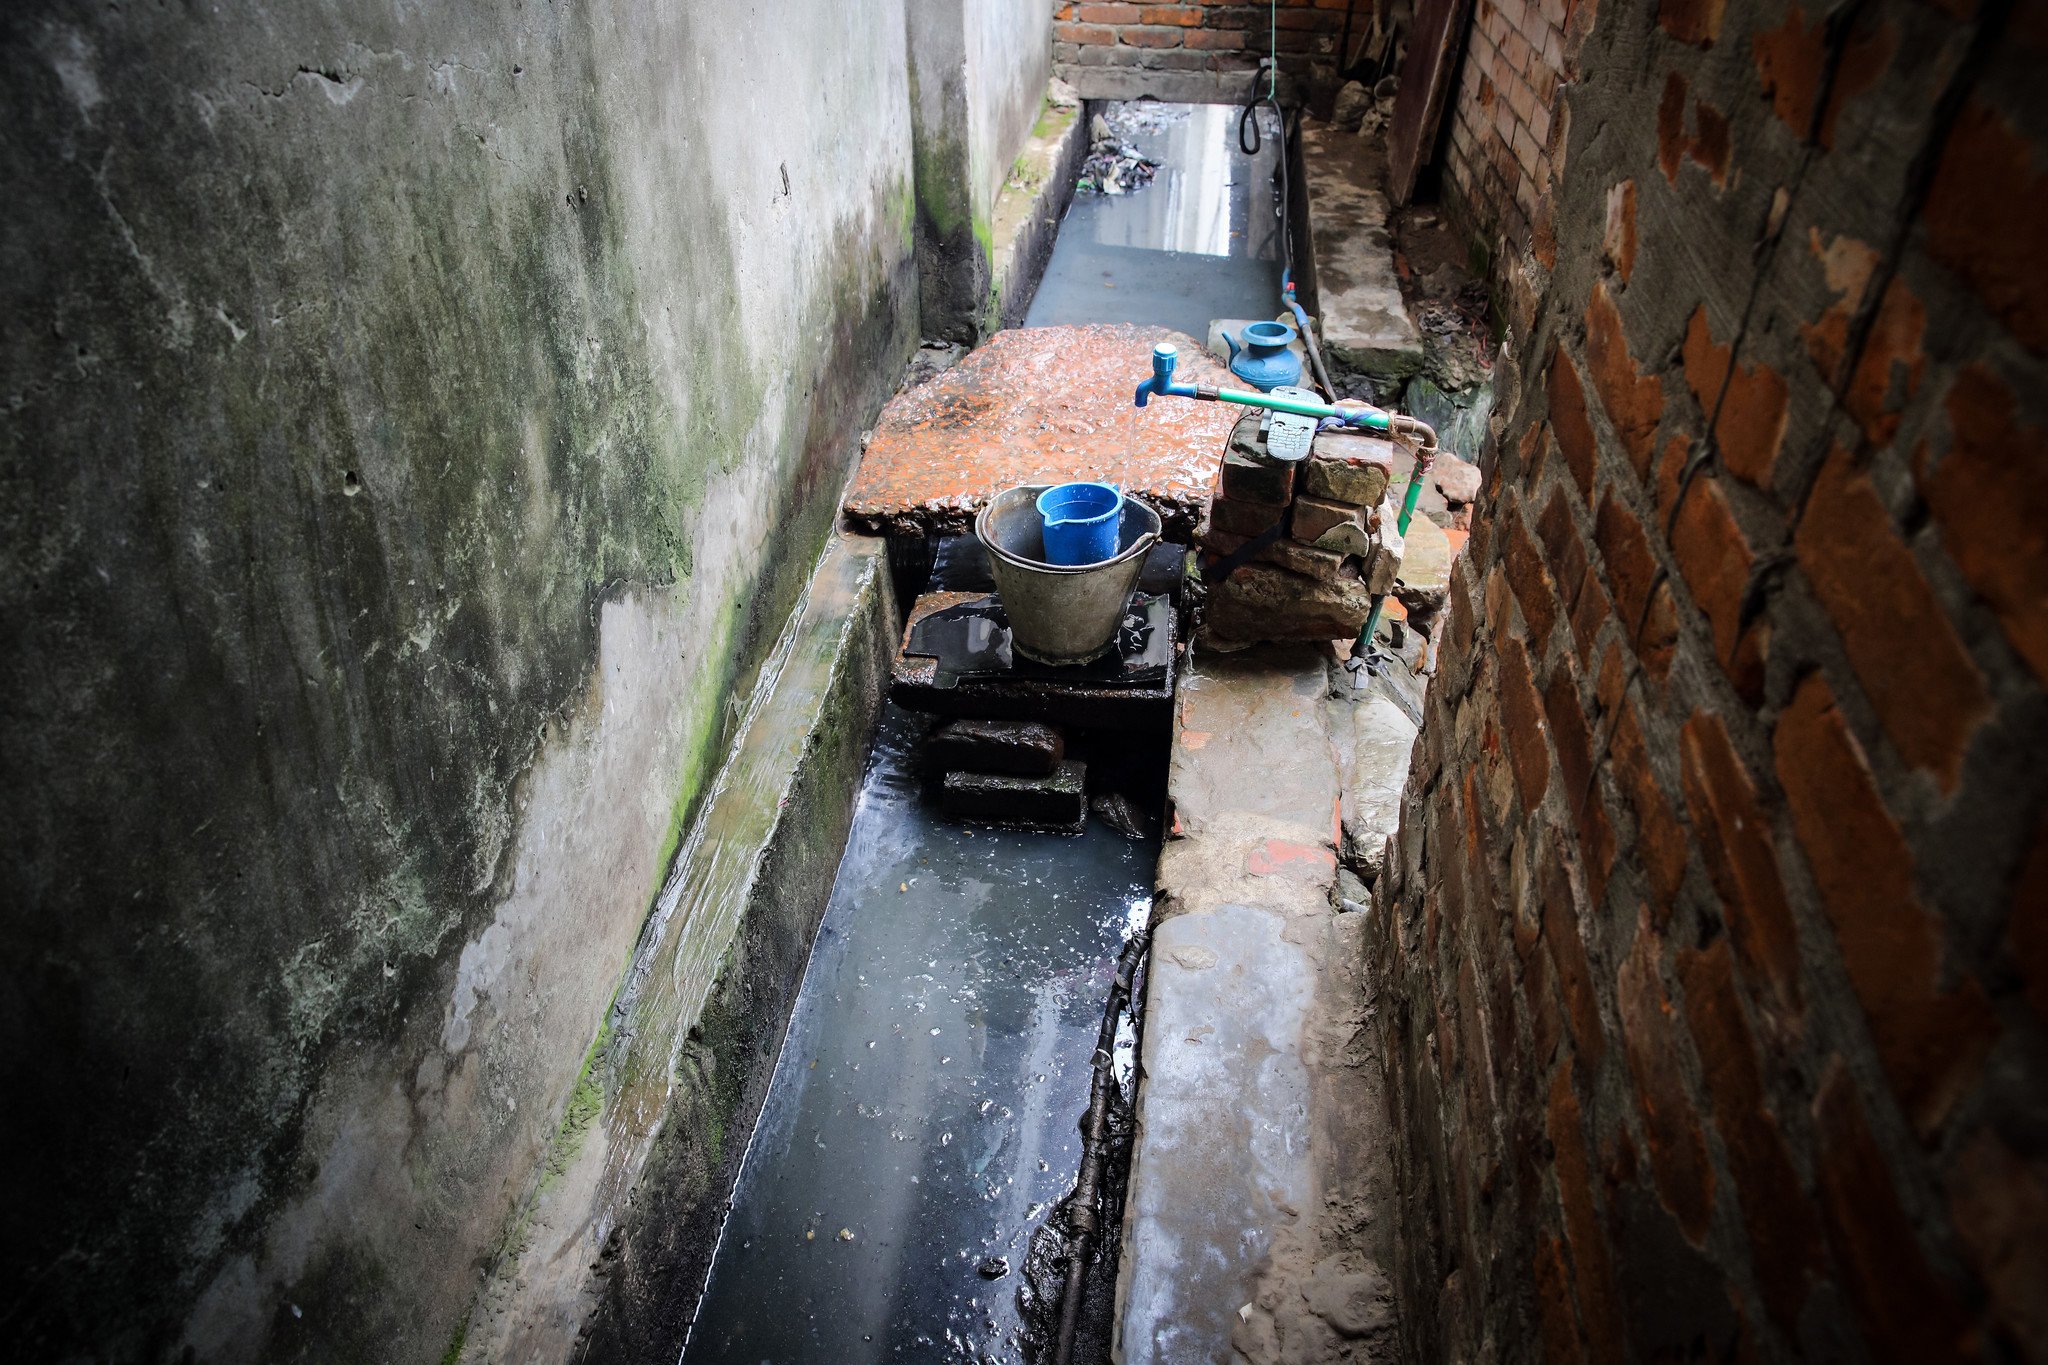 工业区的棚屋大部分都没有安装水管，公用取水处经常大排长龙，居民会在水渠旁边洗澡、洗衣服和预备食物，卫生情况恶劣。另外，城内排污设备未臻完善，雨季时，污水渠淤塞的情况时有发生，溢出的污水会连同杂物涌入棚屋，恶劣的卫生环境危害居民健康。（摄影：GMB Akash）